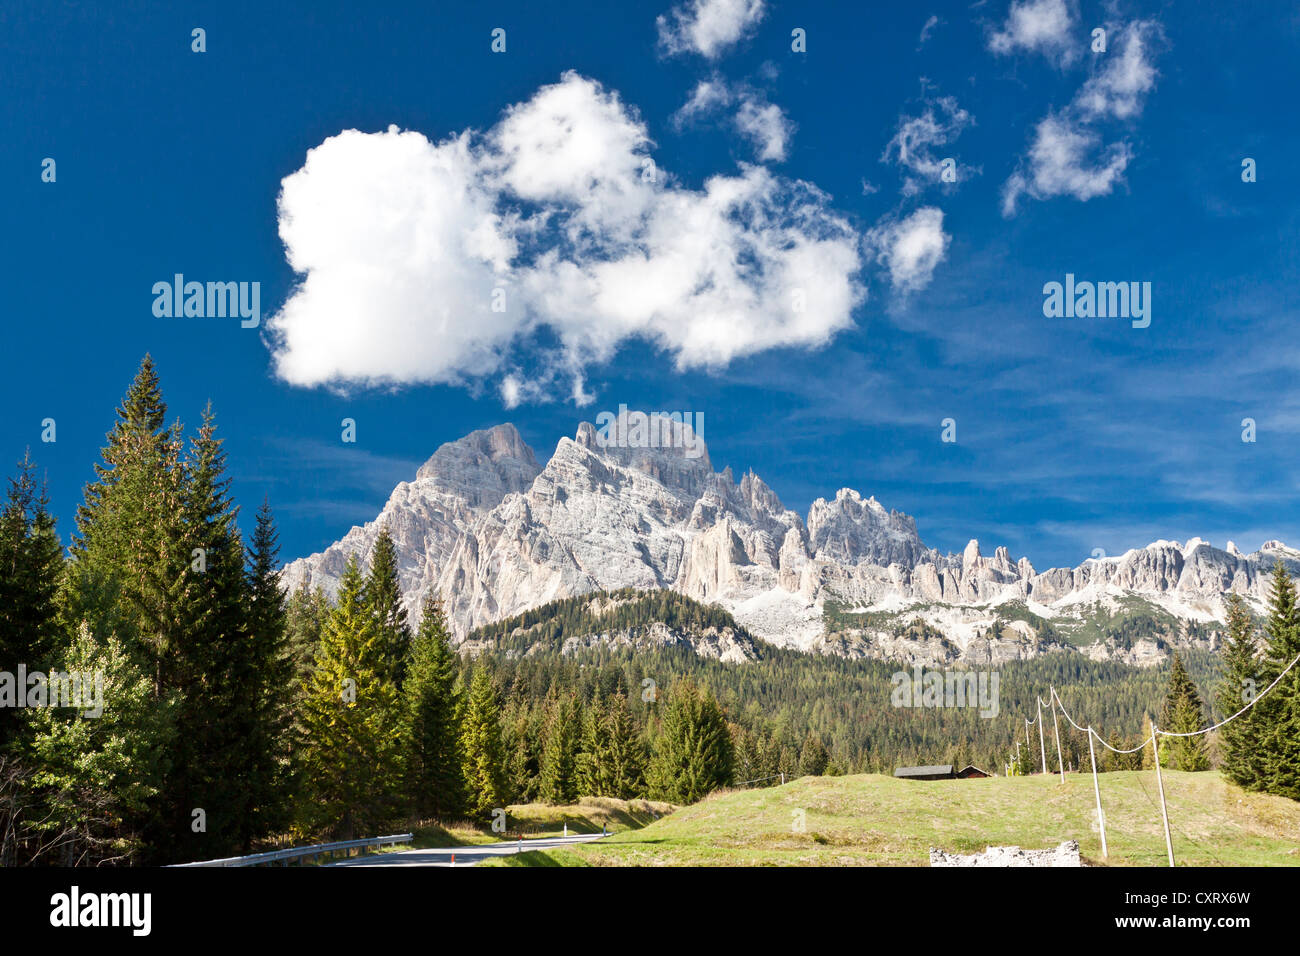 Gruppo delle Marmarole, Marmarole gruppo montuoso, Auronzo di Cadore, Dolomiti, Italia, Europa Foto Stock